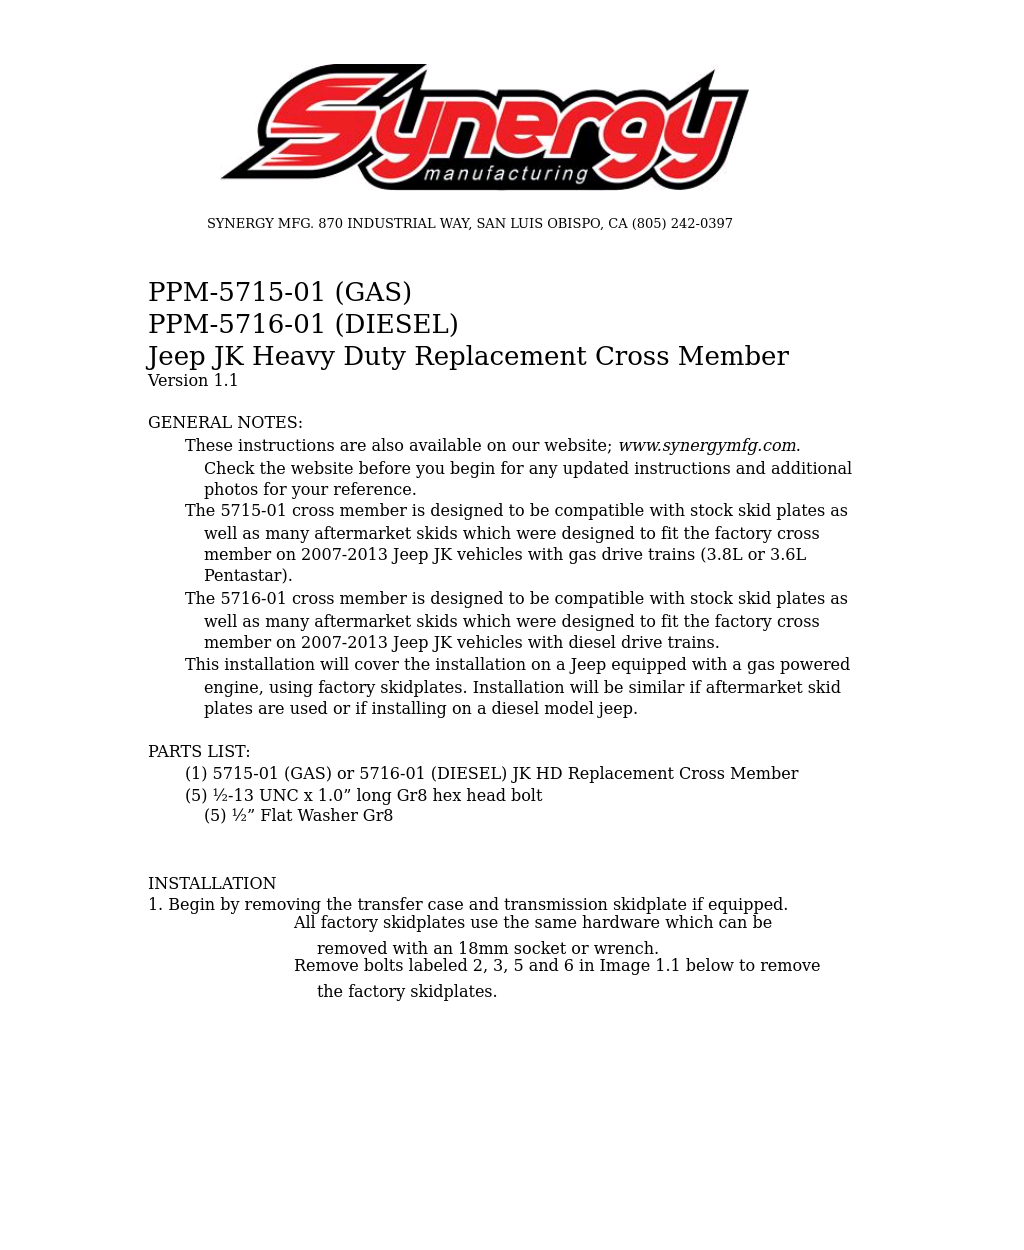 5716-01 - JK Diesel HD Transmission Cross Member 07+